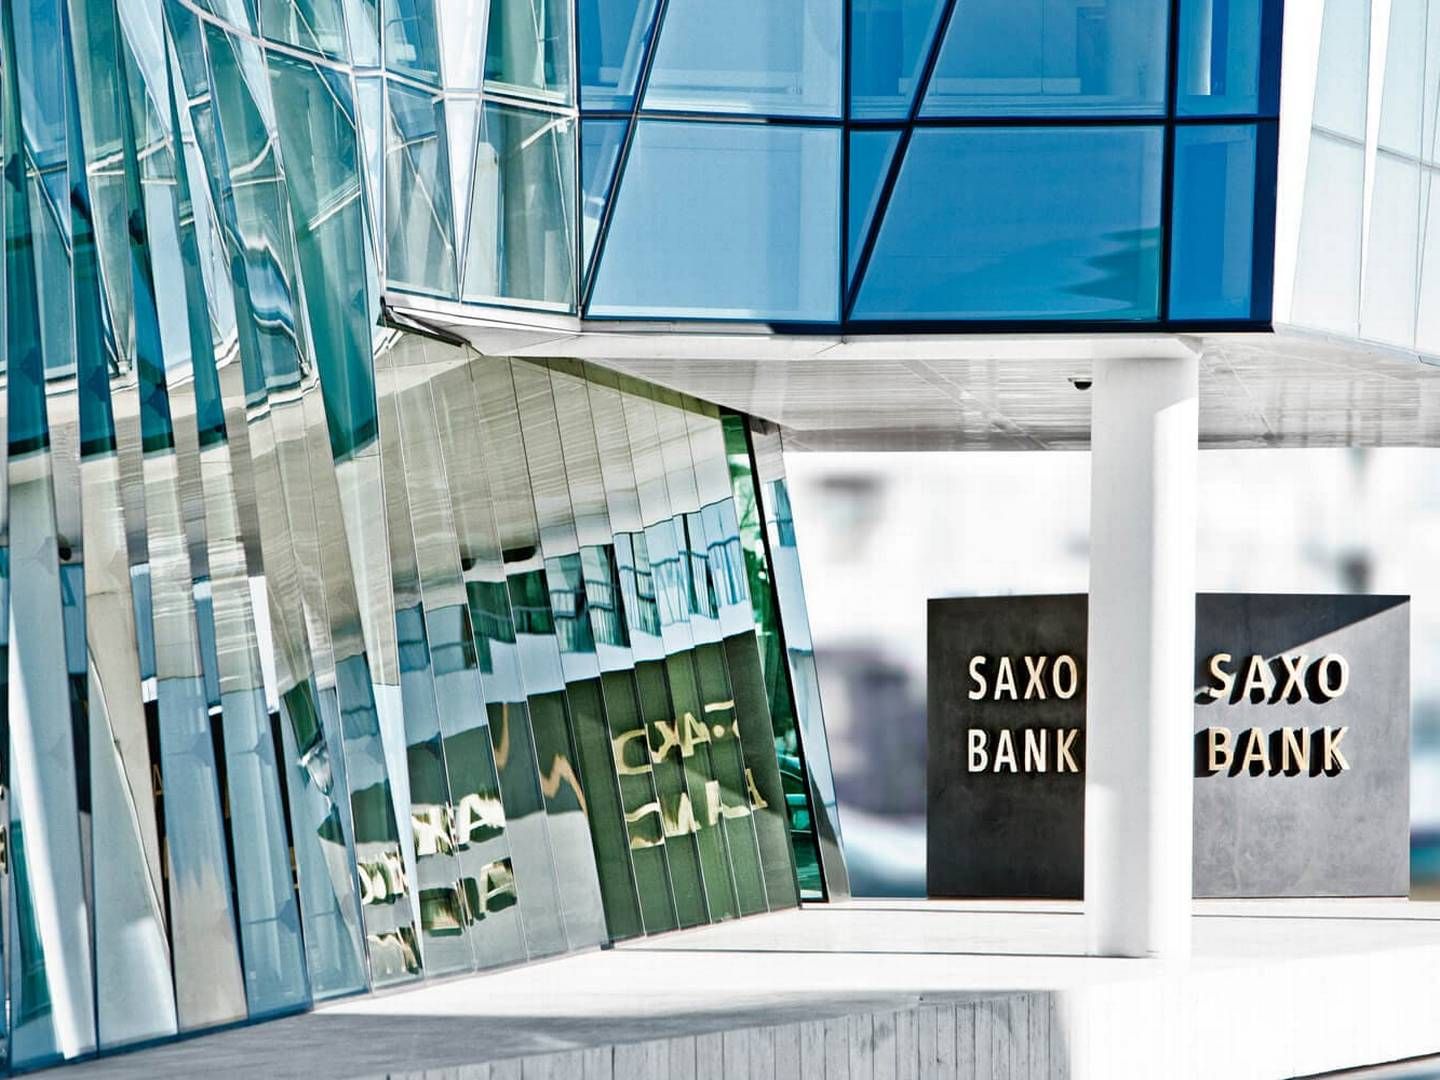 De seneste år har Saxo Bank flere gange annonceret planer om at ændre i ejerskabet. I 2022 offentliggjorde banken planer om at blive børsnoteret i Amsterdam via en børsskal. | Foto: Saxo Bank / PR